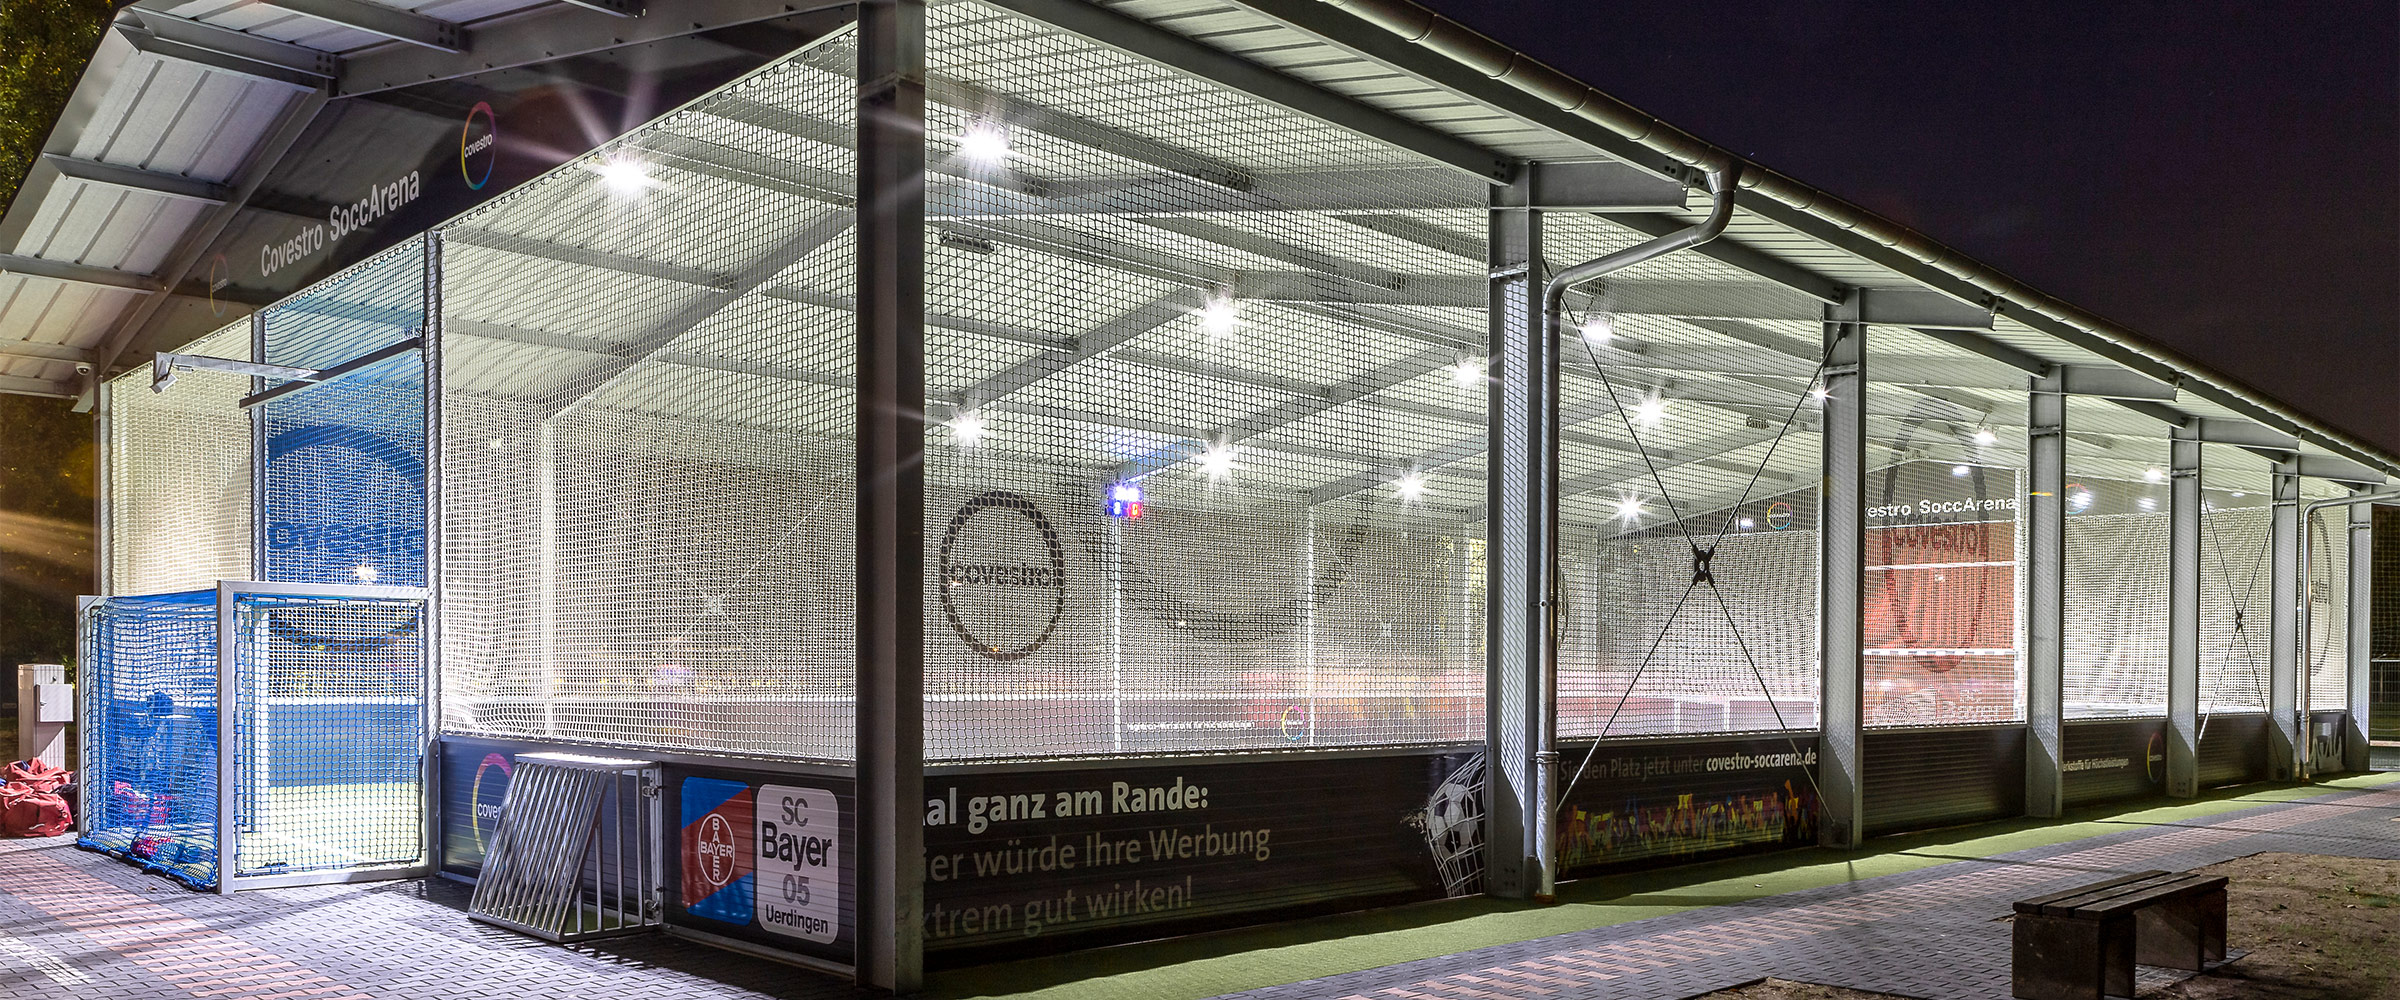 Die Cocestro SoccArena Soccerhalle Krefeld von außen. Helle LED Strahler beleuchten die moderne Soccerhalle bei Nacht.